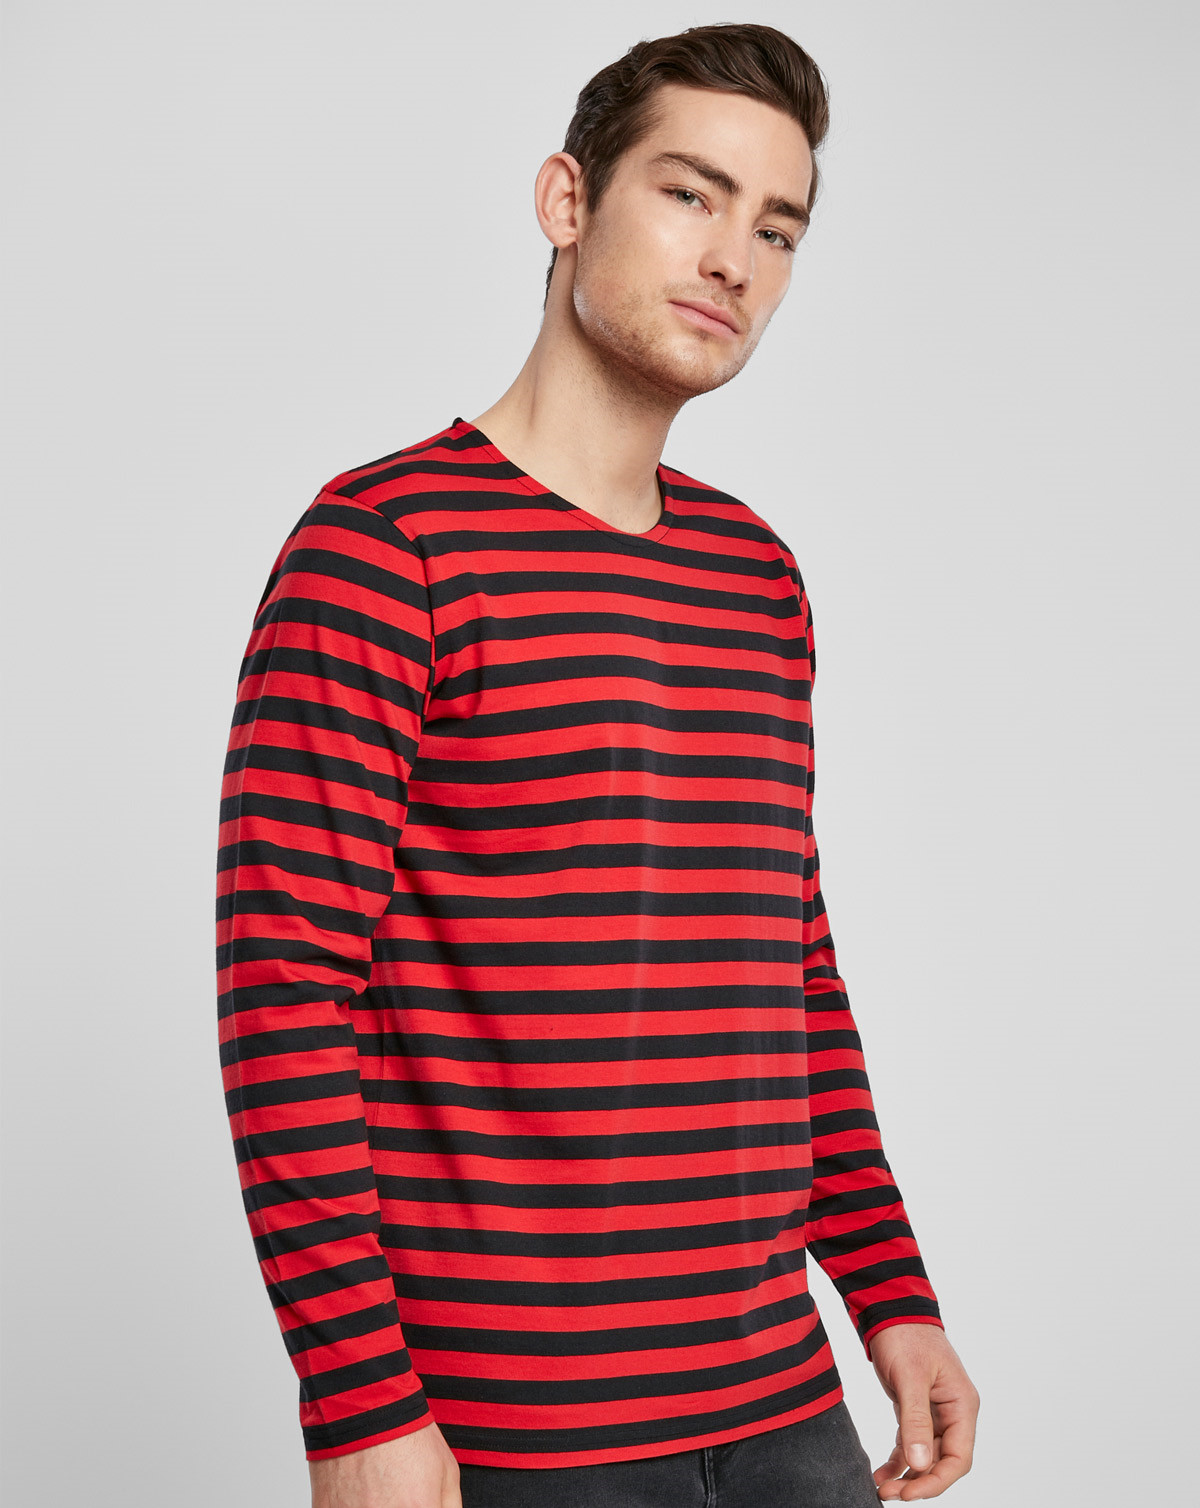 #2 - Urban Classics Regular StripeLong Sleeve T-Shirt (Fire Red / Black, XL)